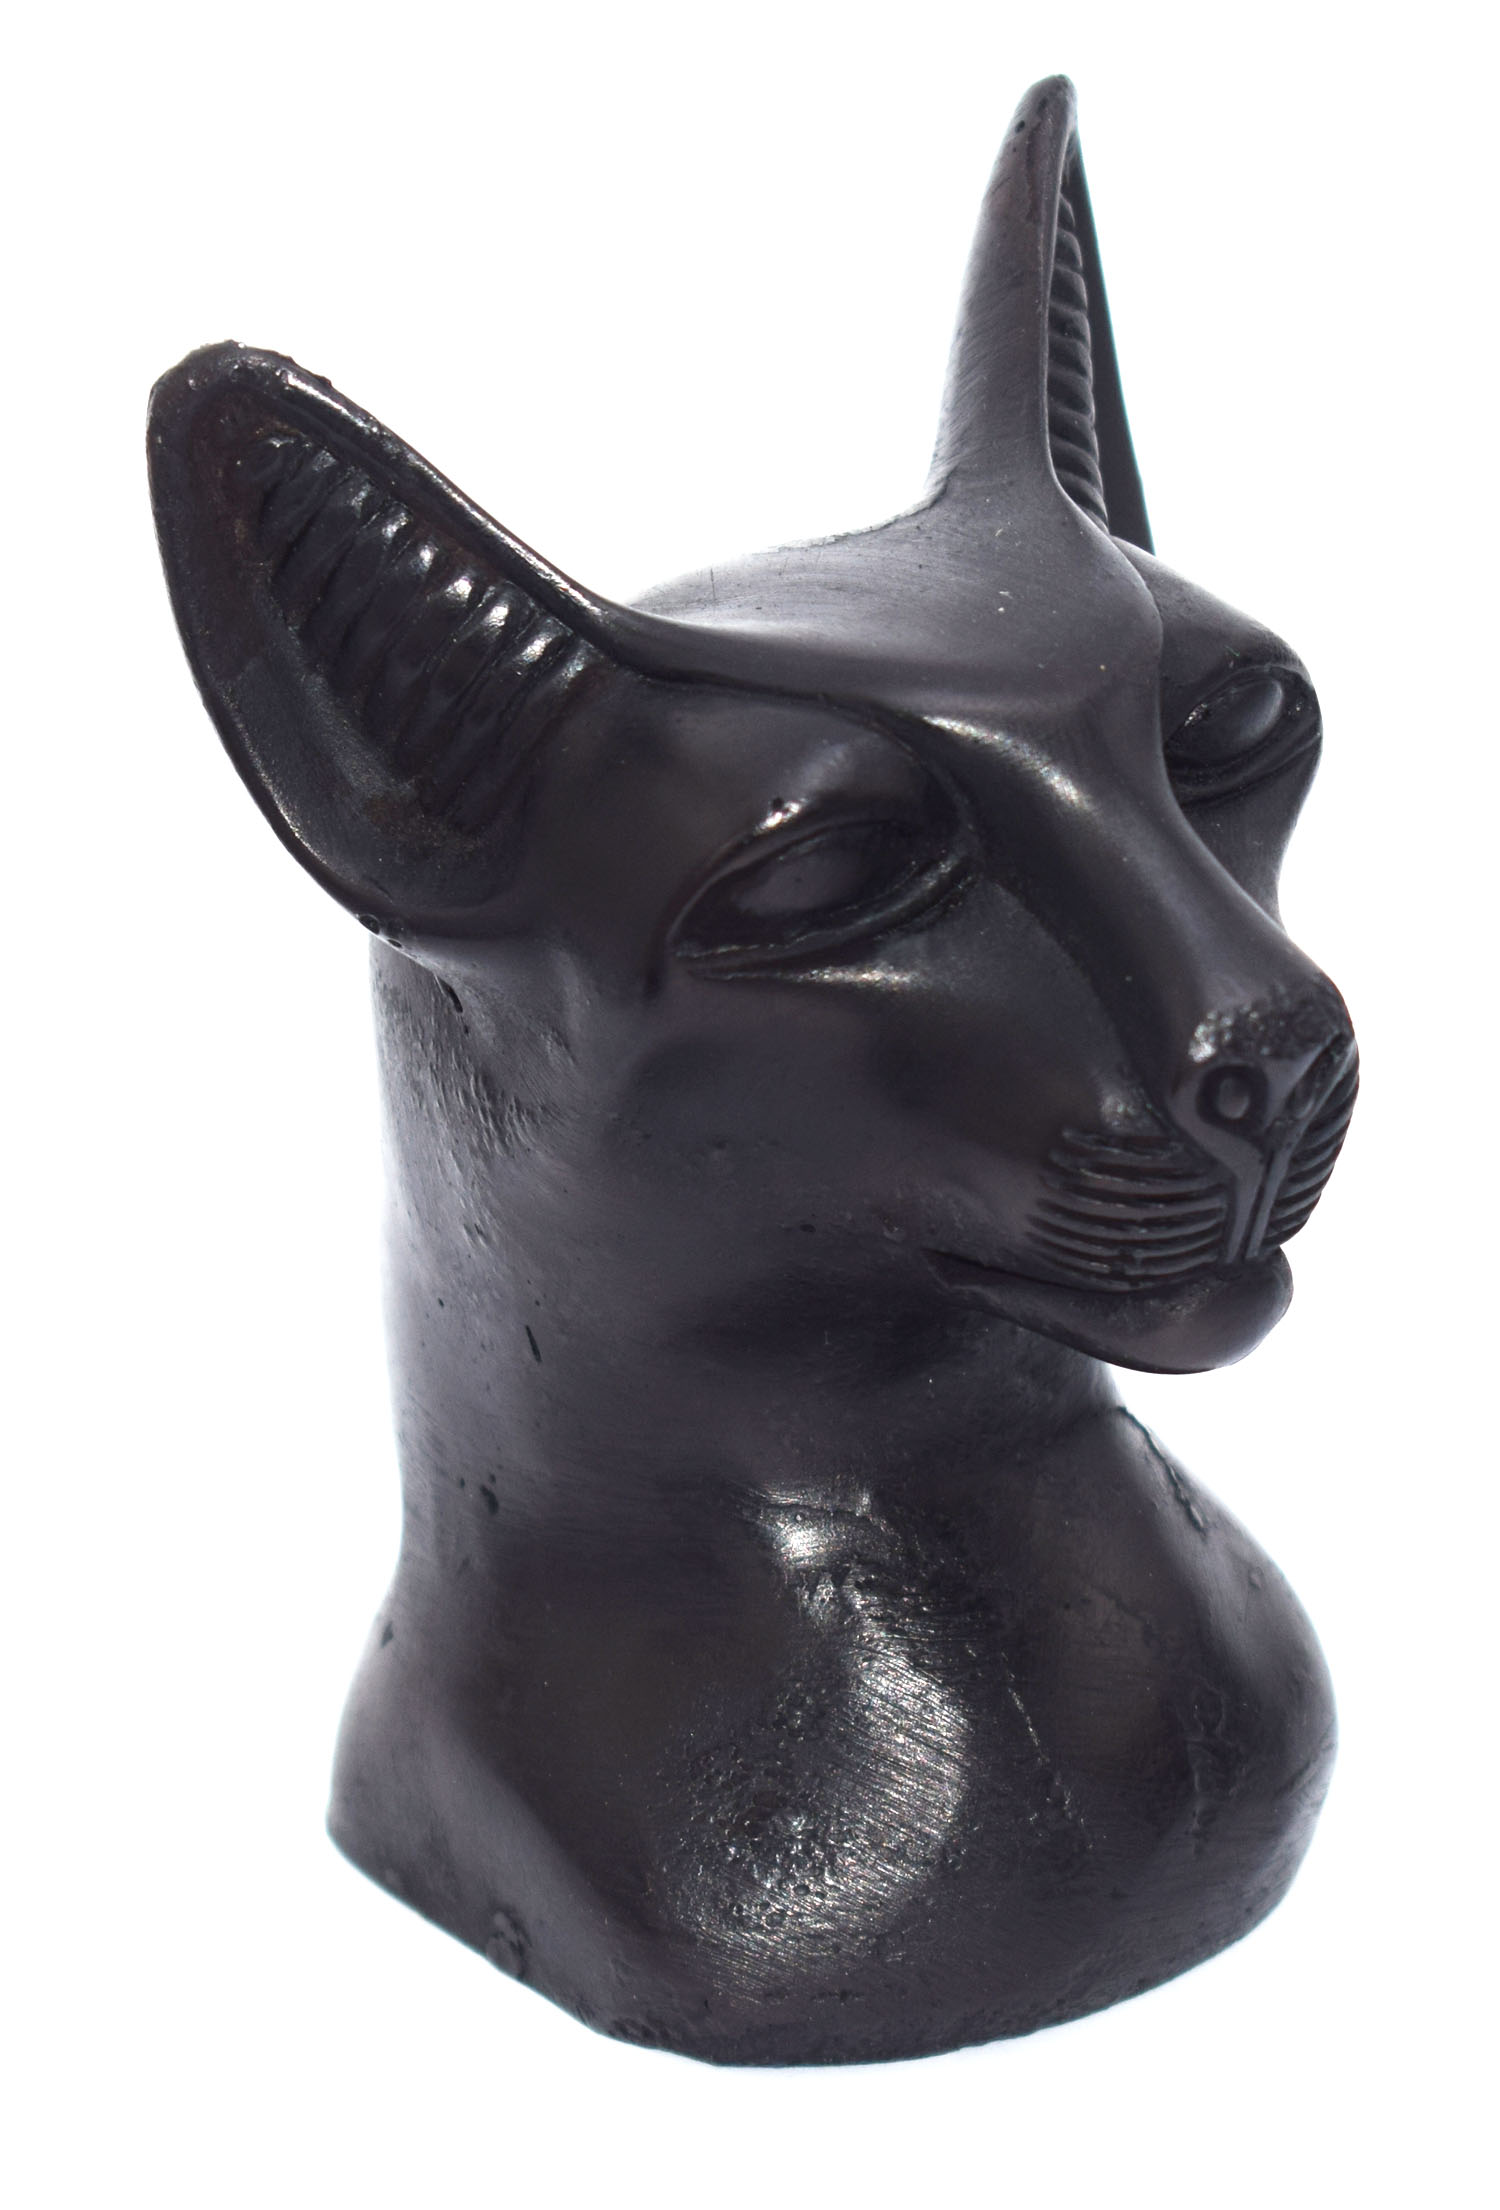 تمثال رأس قط فرعوني فرعوني مصري هدايا تذكارية مصرية للنساء والفتيات والأم (أسود - طول 10.5 سم)